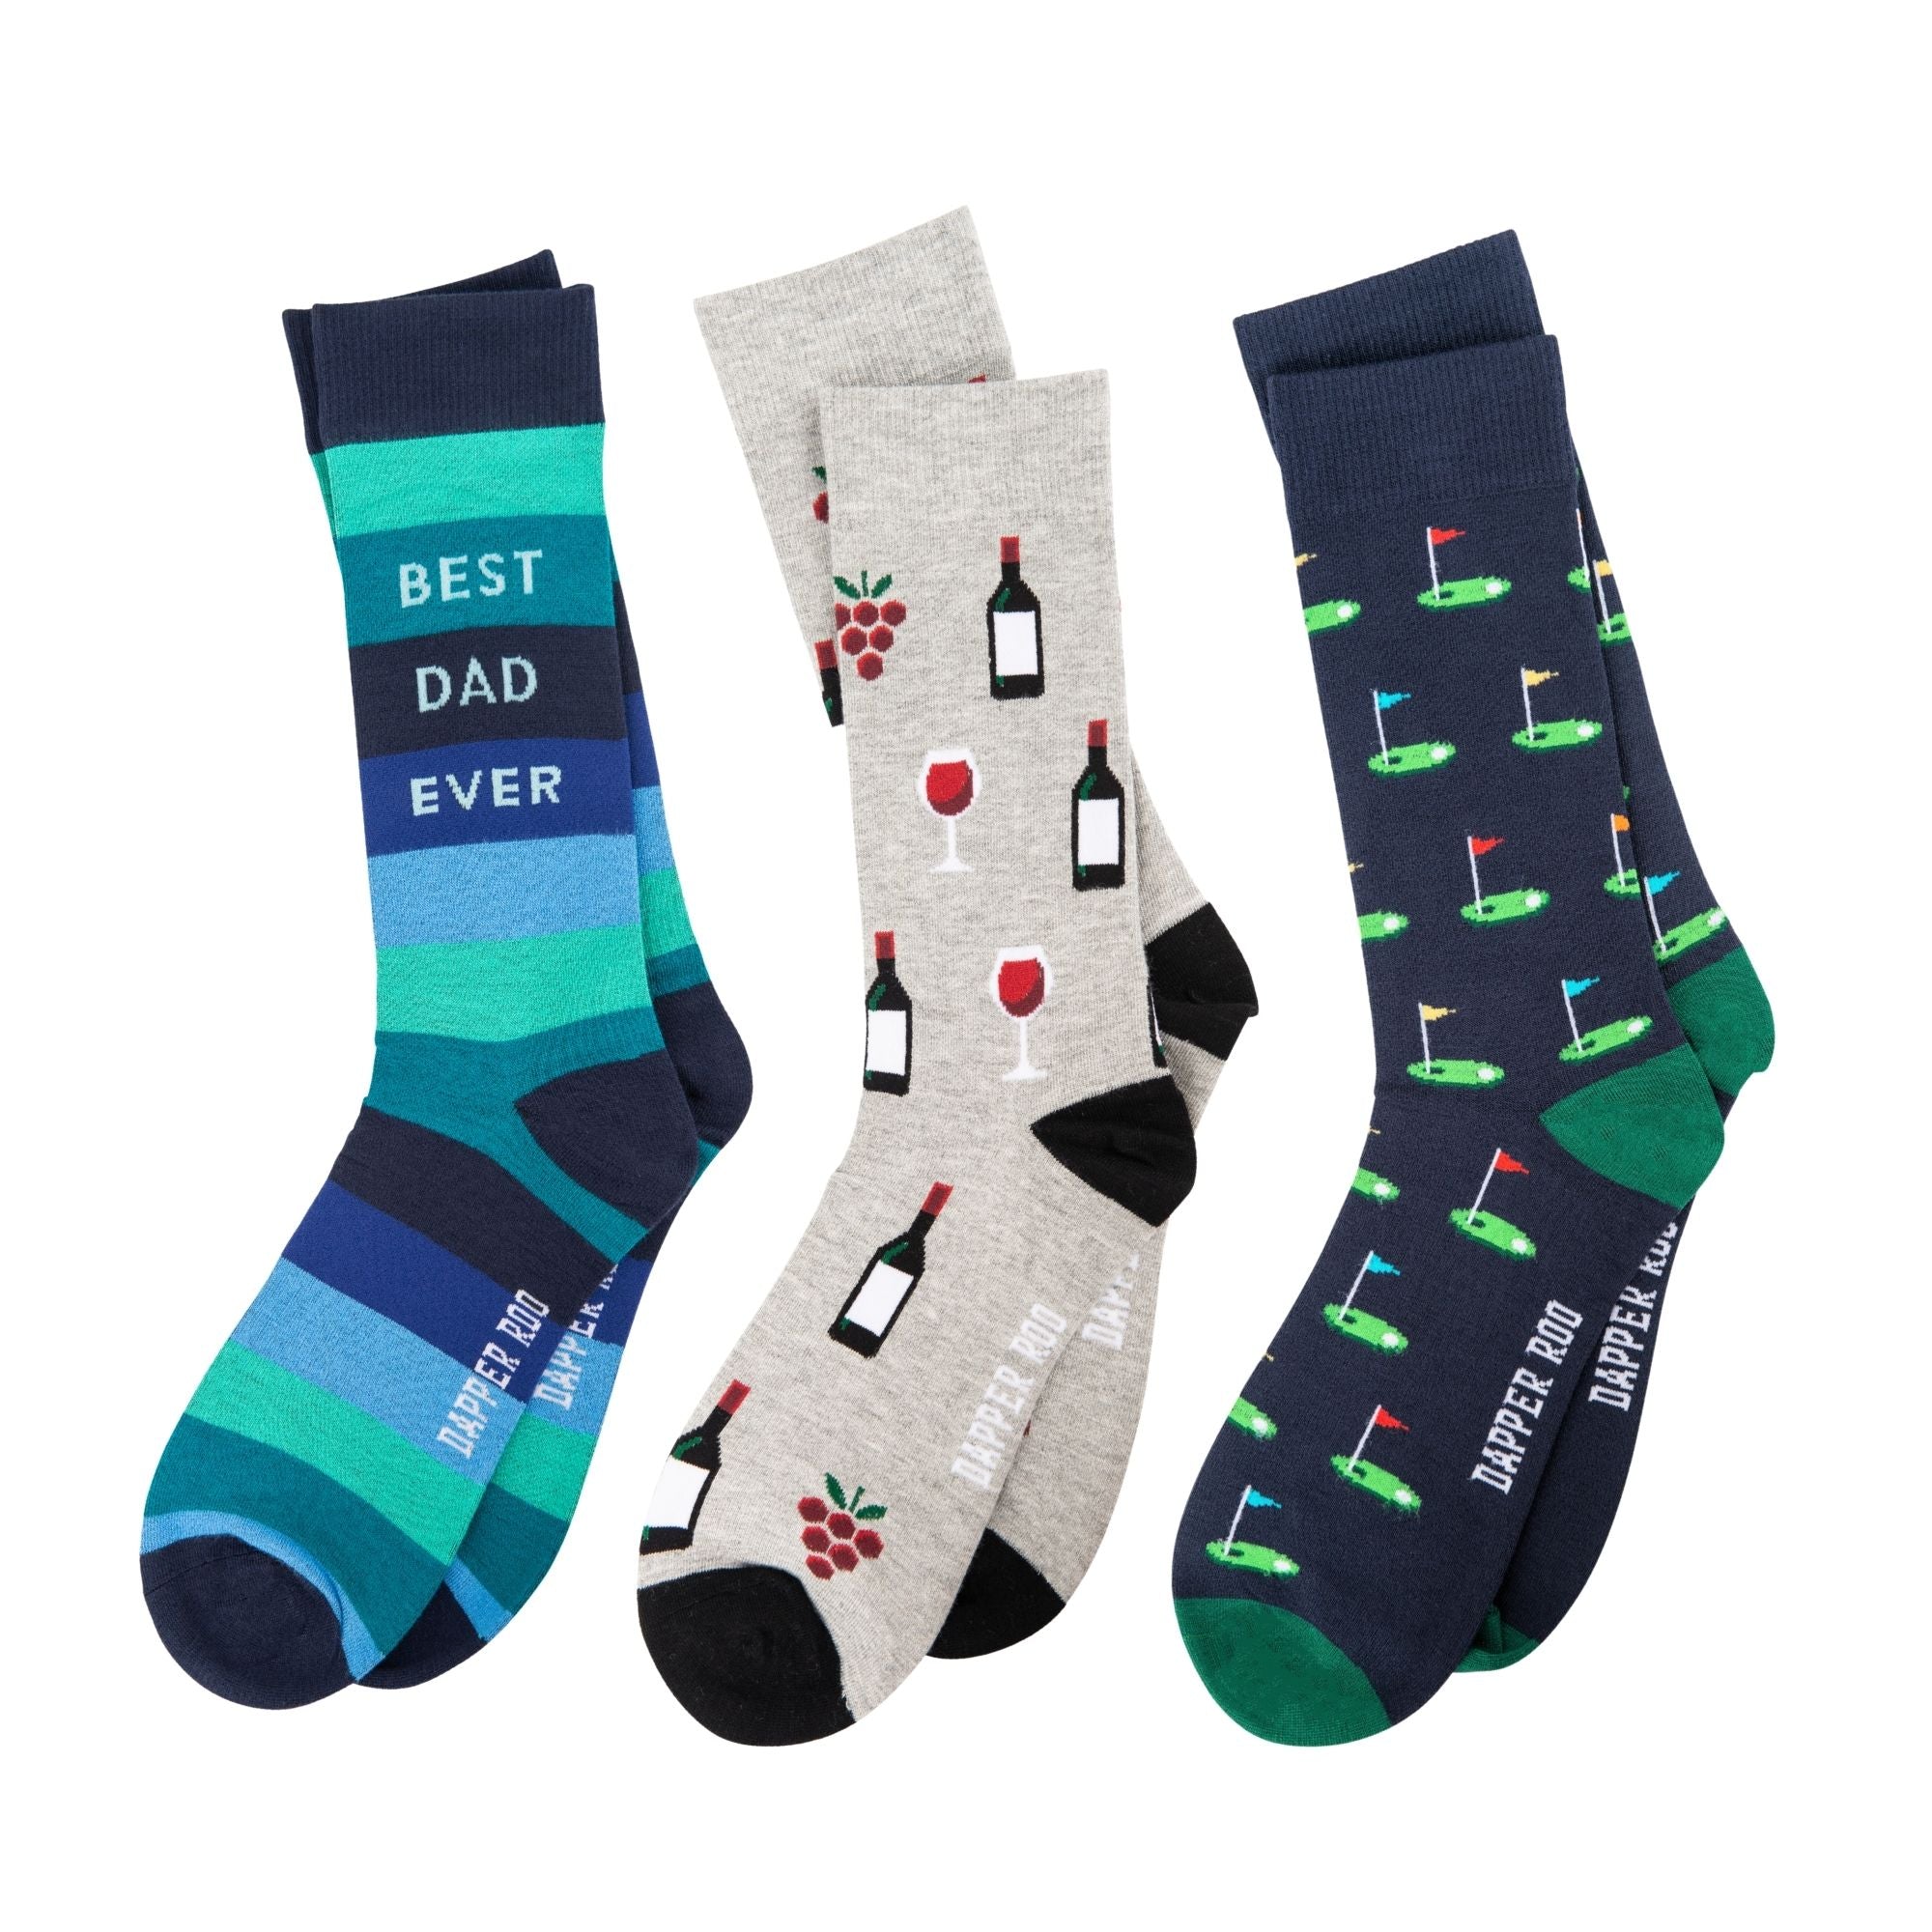 Dad Golf Socks Gift Set, Dad Golf Gift Set, Gift Set, Socks Gift Set, Socks, Location: SK2020+SK2036+SK2000, SS5018, Clinks.com